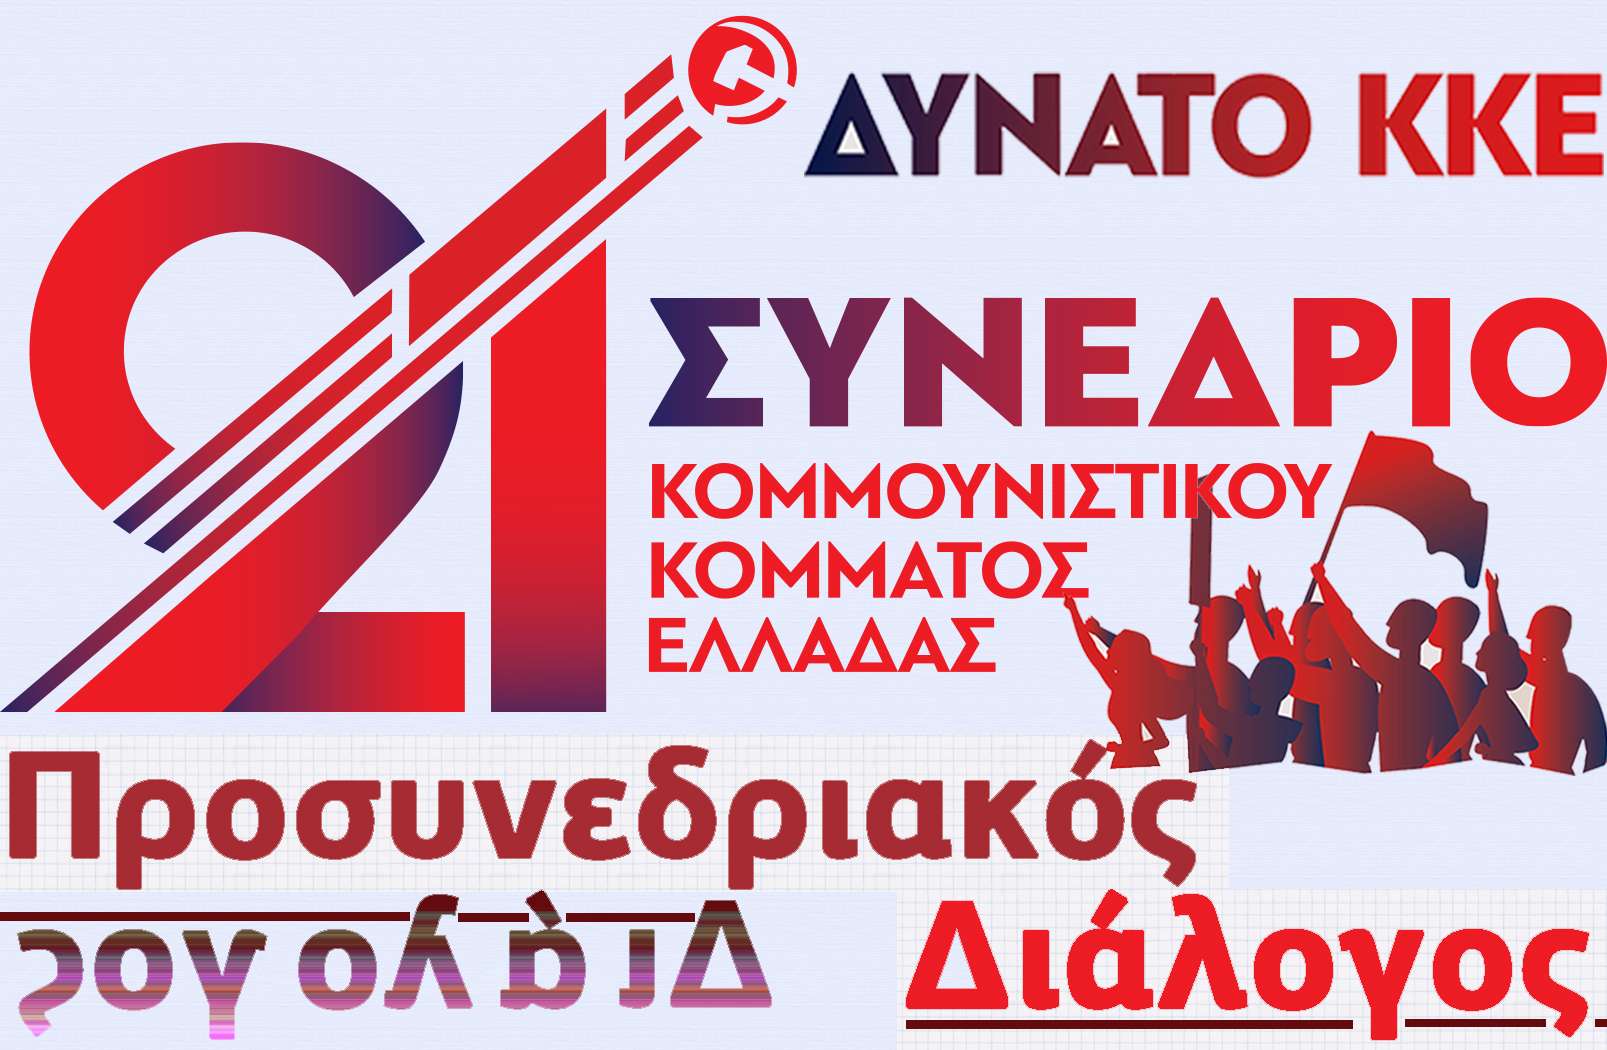 ΚΚΕ-KKE 21ο Συνέδριο Προσυνεδριακός Διάλογος